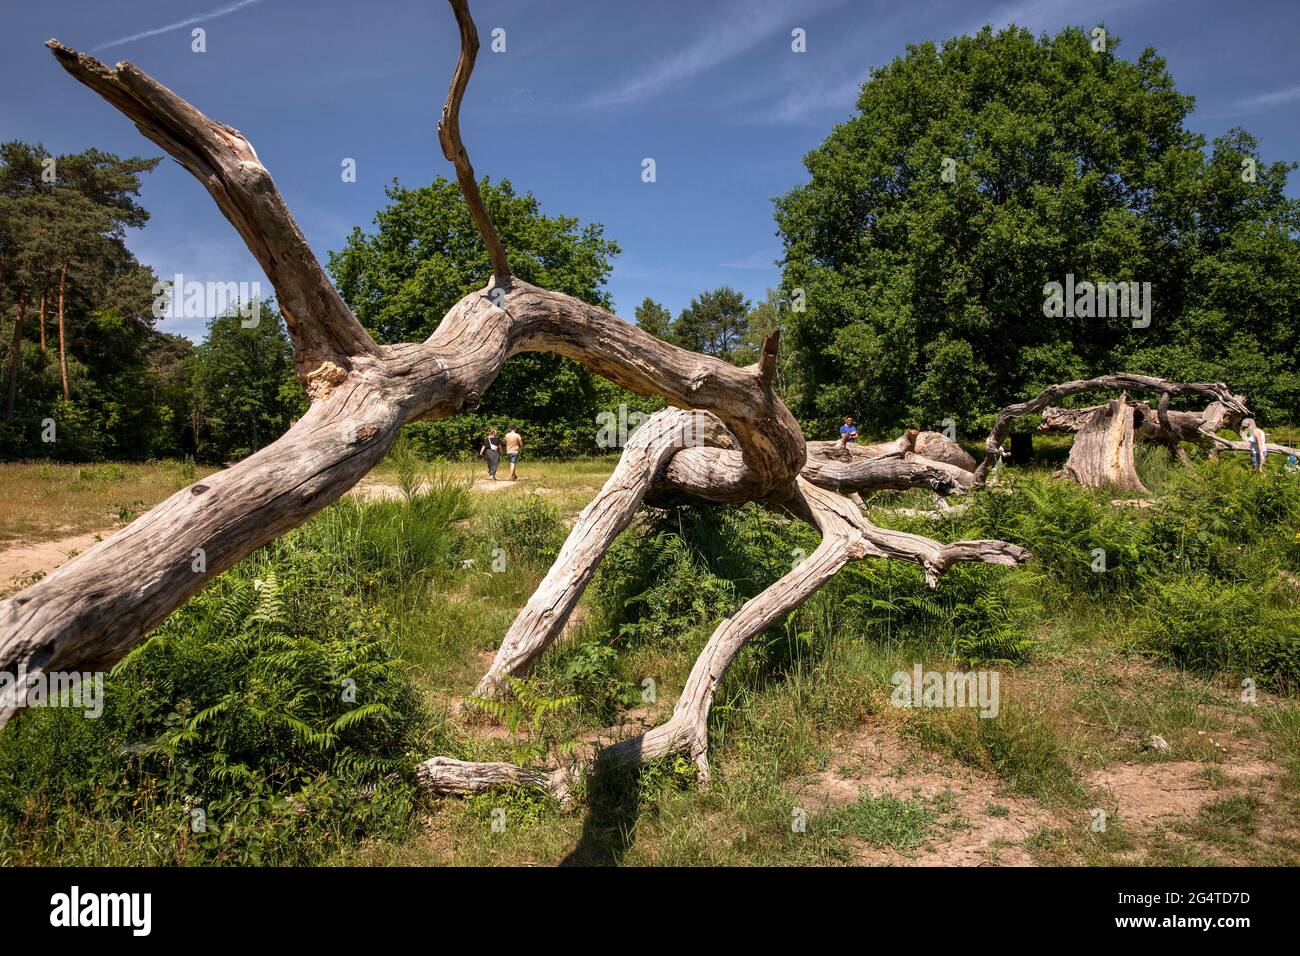 fallen and dead tree in the Wahner Heath near Telegraphen hill, Troisdorf, North Rhine-Westphalia, Germany.  umgestuerzter und abgestorbener Baum in d Stock Photo